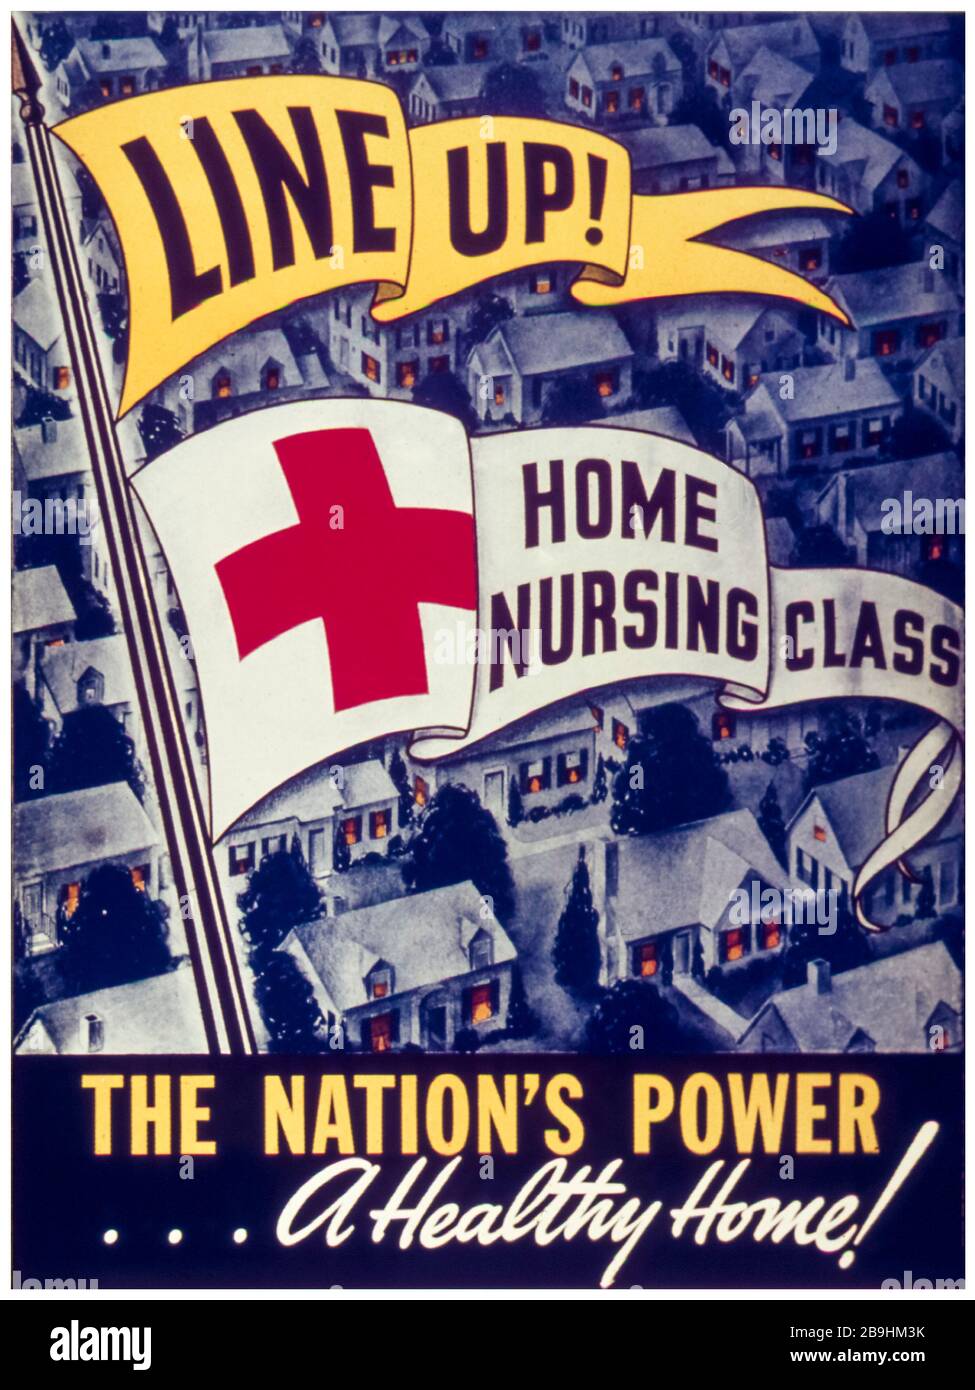 Affiche de campagne de la classe de soins infirmiers à domicile de la seconde Guerre mondiale, ligne vers le haut : classe de soins infirmiers à domicile, puissance de la nation, une maison saine, 1941-1945 Banque D'Images